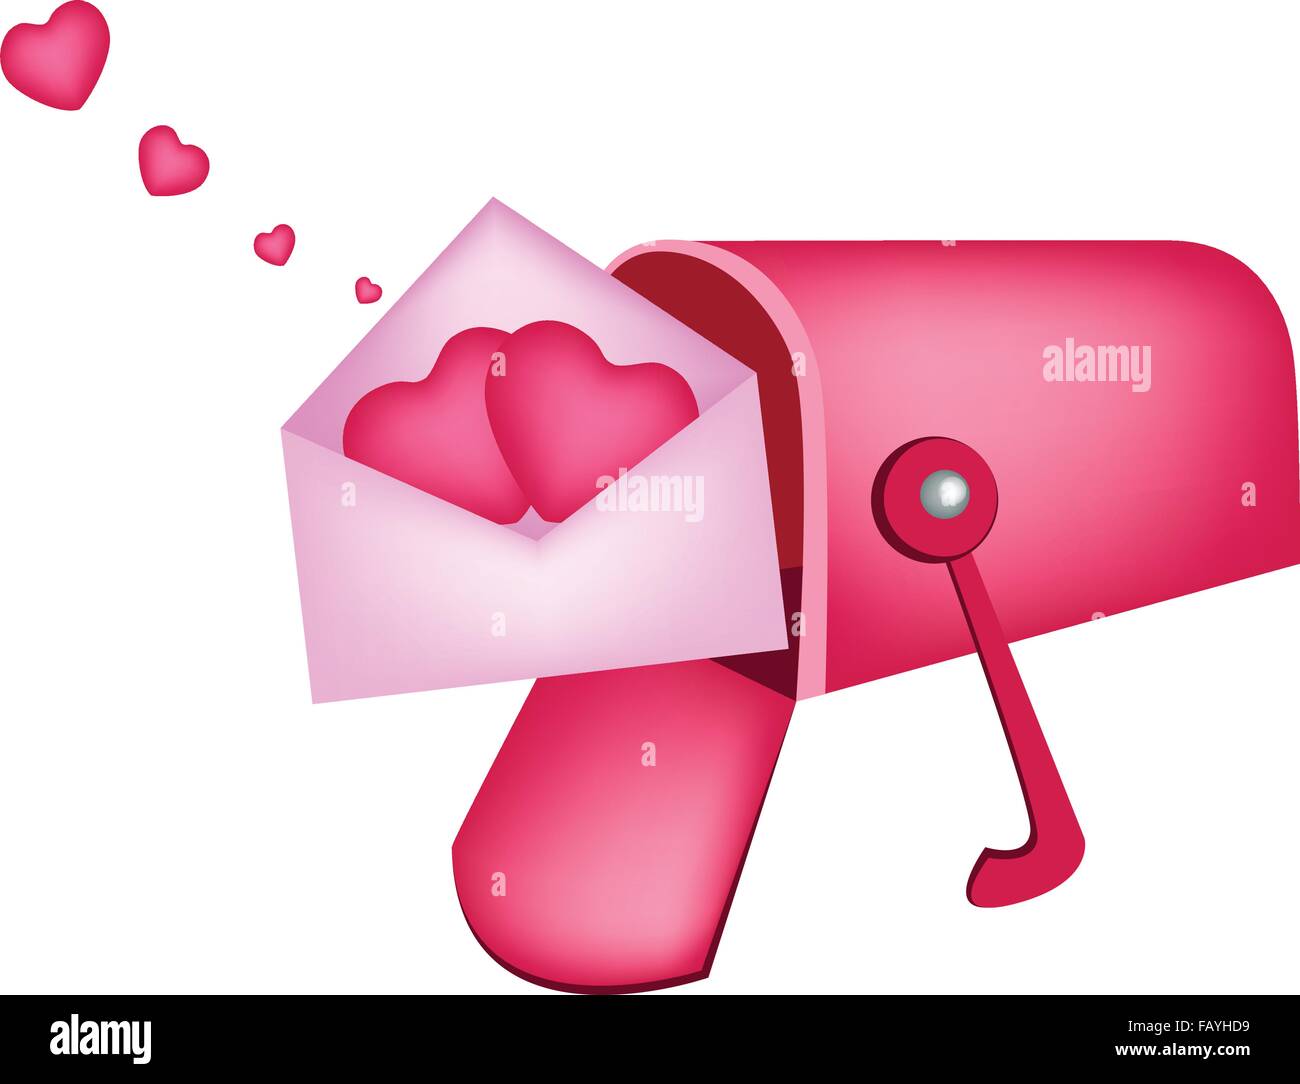 Ein offener Standard Postfach oder Briefkasten empfangen Liebesbrief und  zwei Herzen in rosa Briefumschläge, eine perfekte romantische Geschenk oder  Stock-Vektorgrafik - Alamy